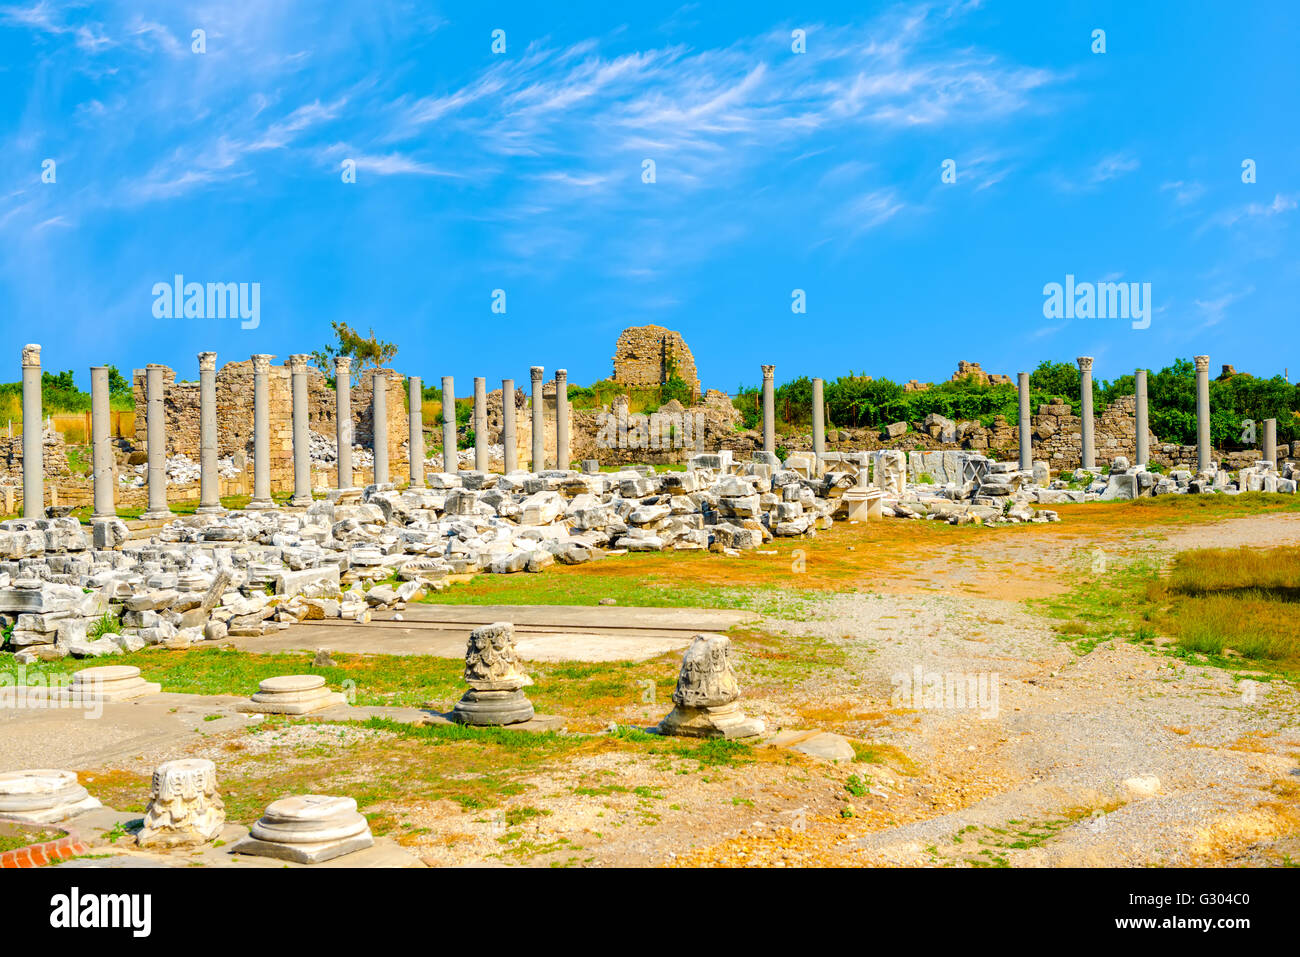 Ruines du temple de la déesse chance Tyché Empire romain, Side, Turquie, voyage historique Banque D'Images